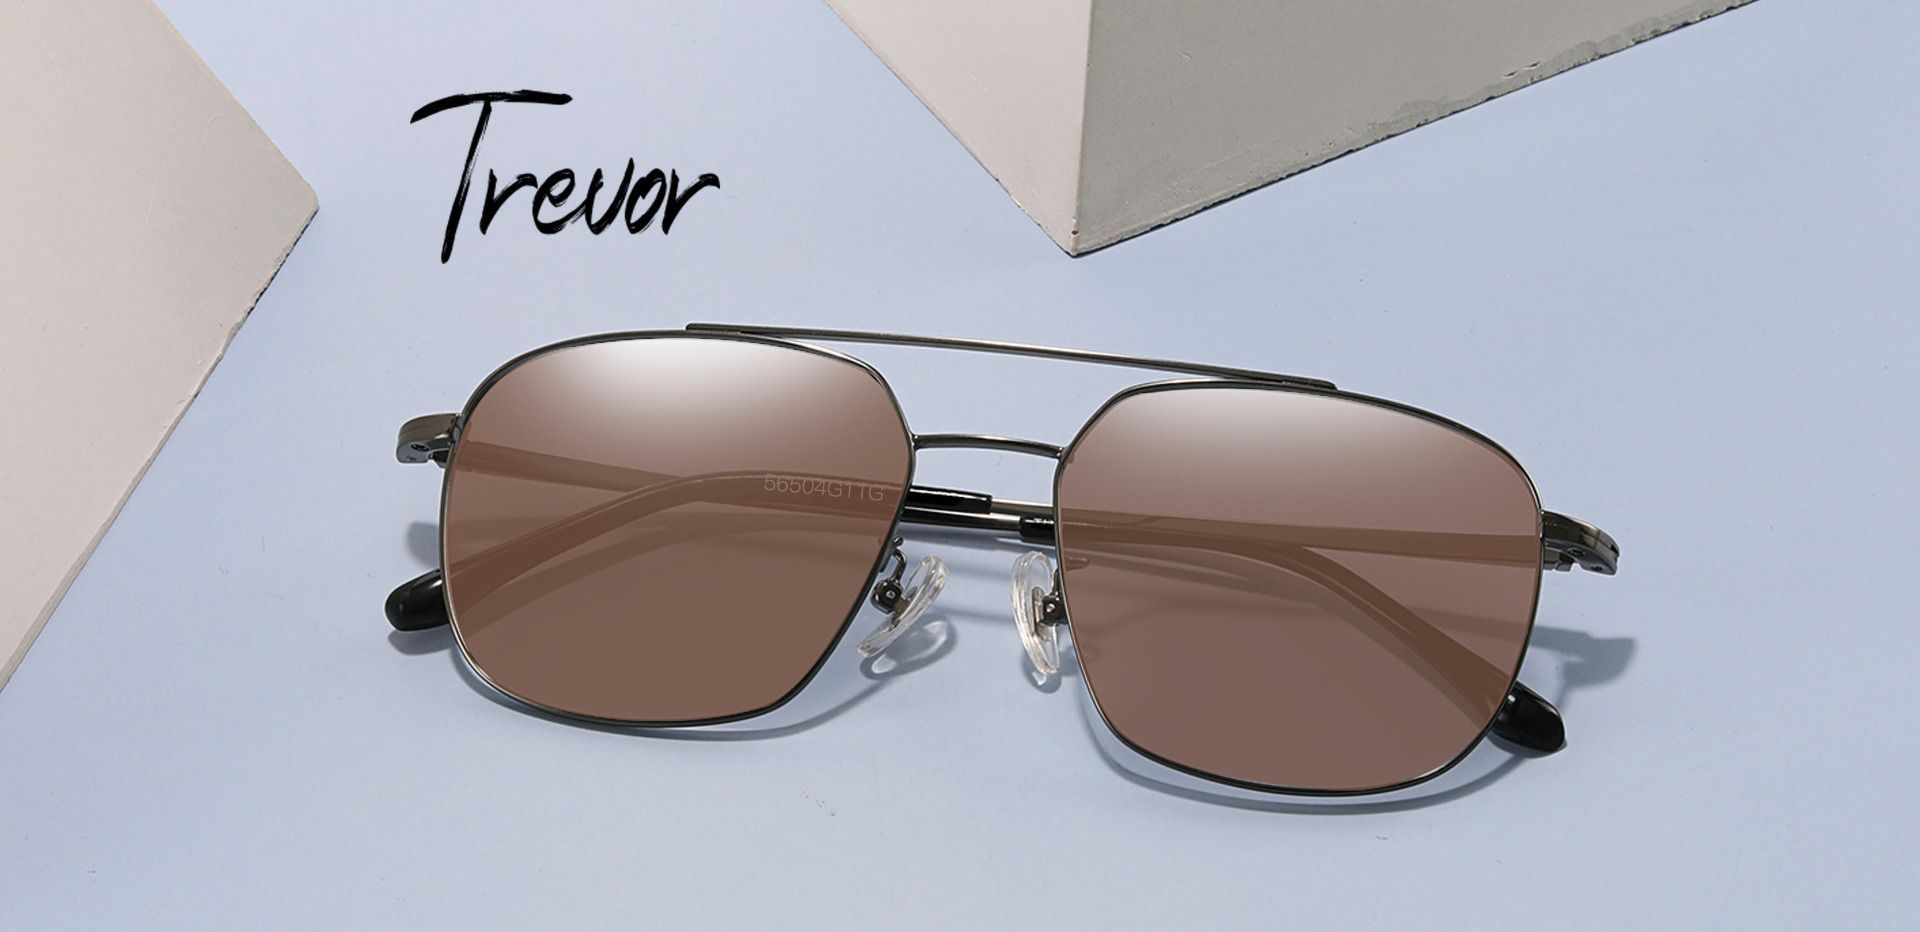 Trevor Aviator Reading Sunglasses - Gray Frame With Brown Lenses